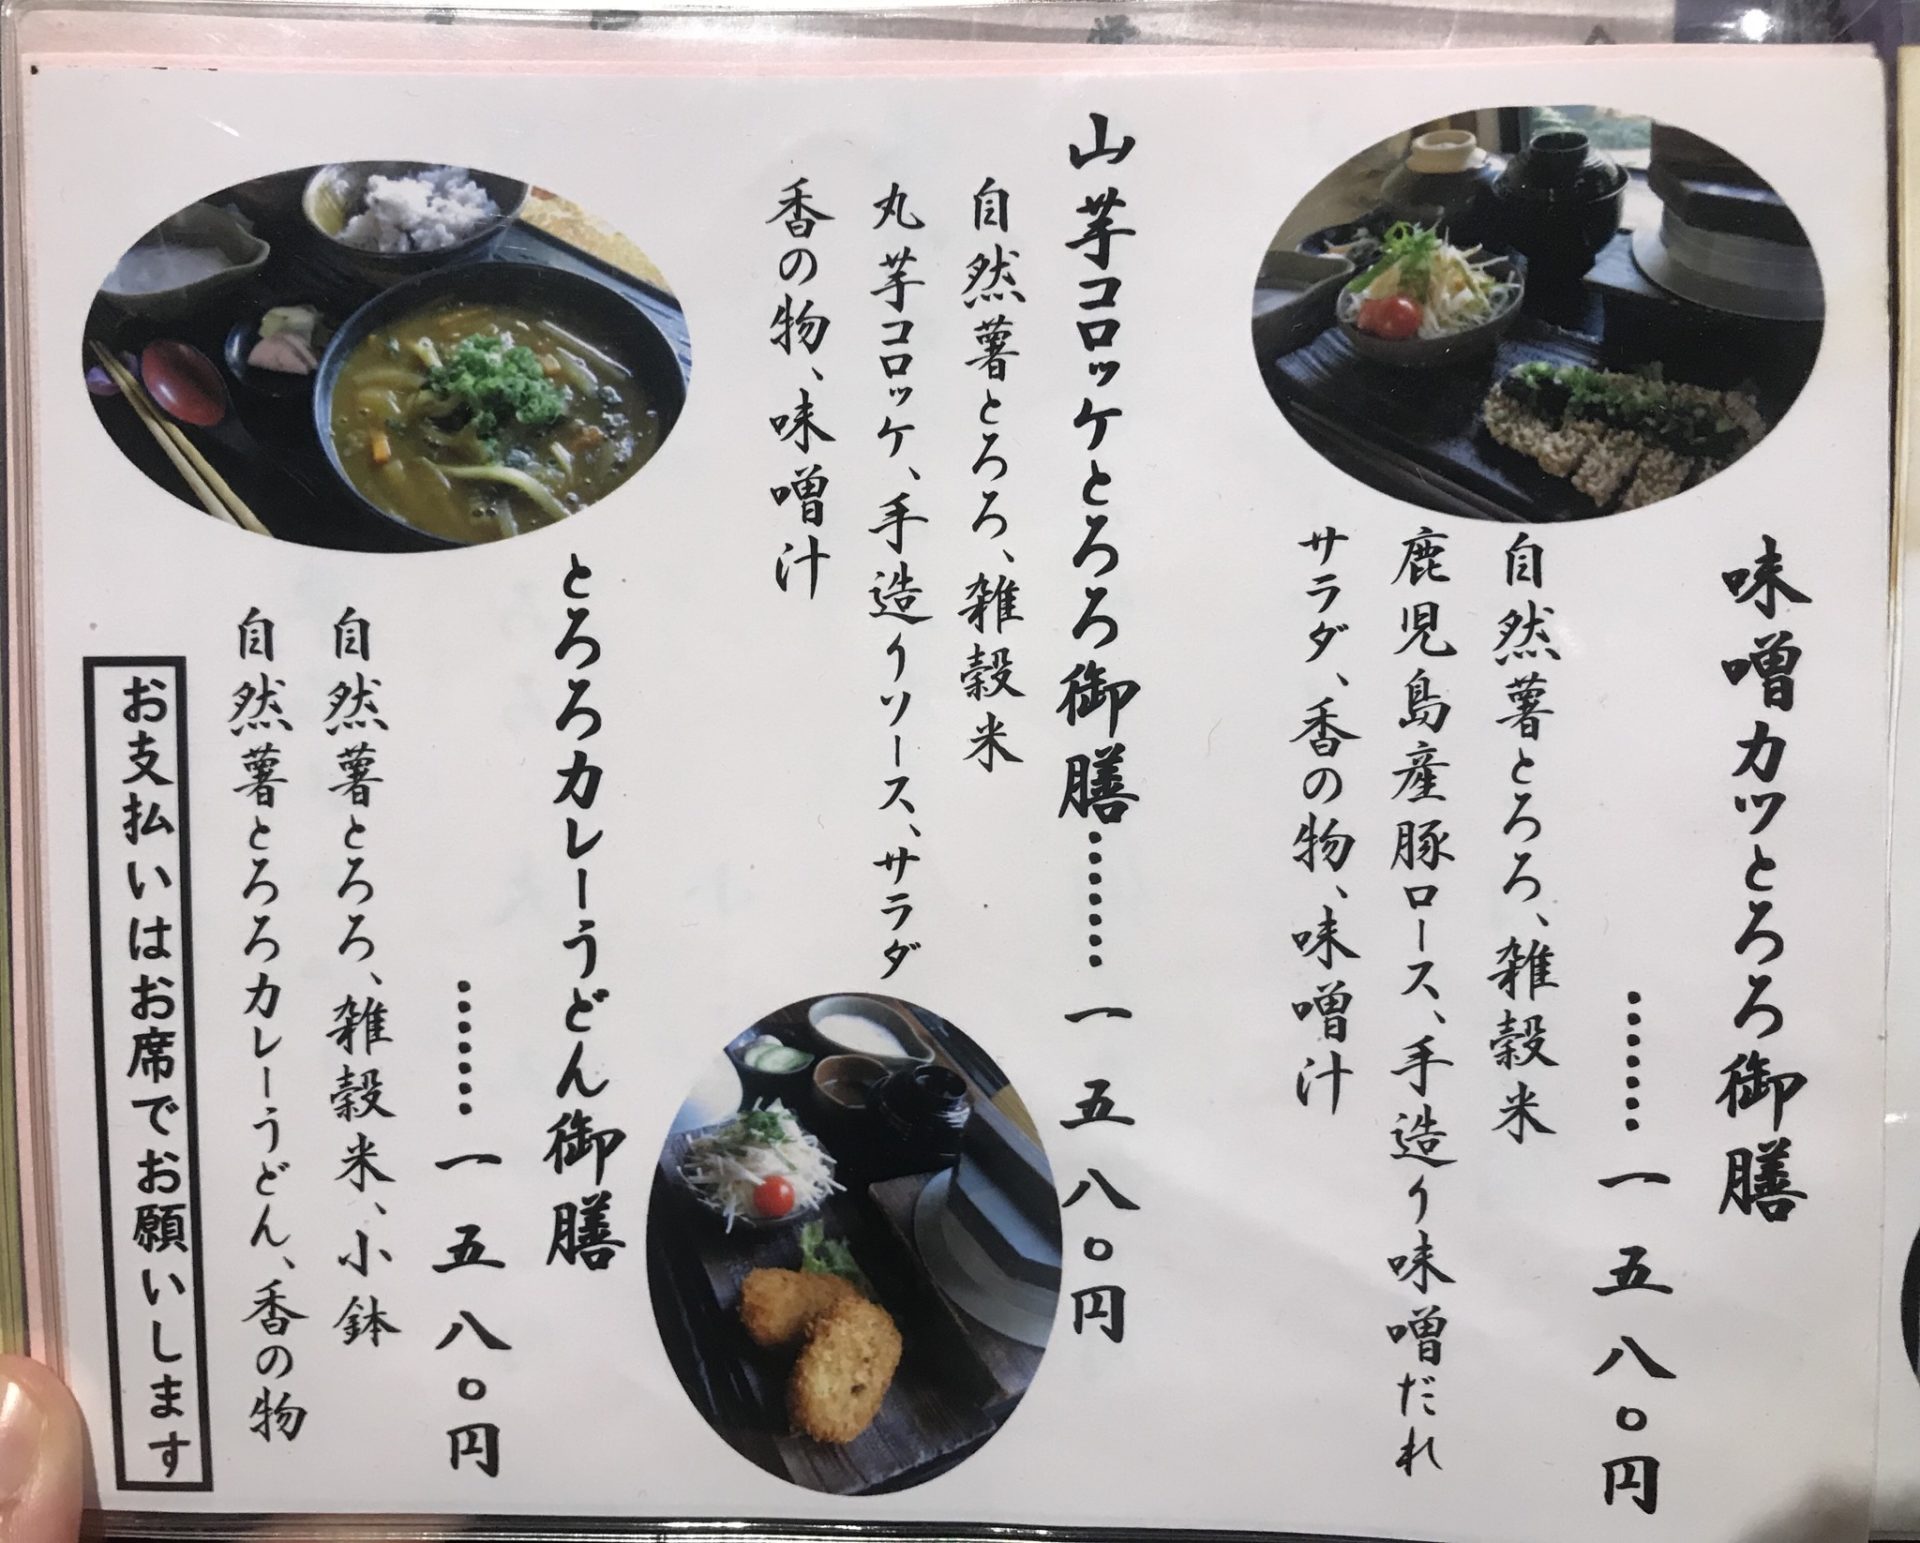 とろろ料理専門店 倭風酔 の とろろづくしランチ 姫路グルメの種 姫路市のローカル情報サイト 裏観光情報も